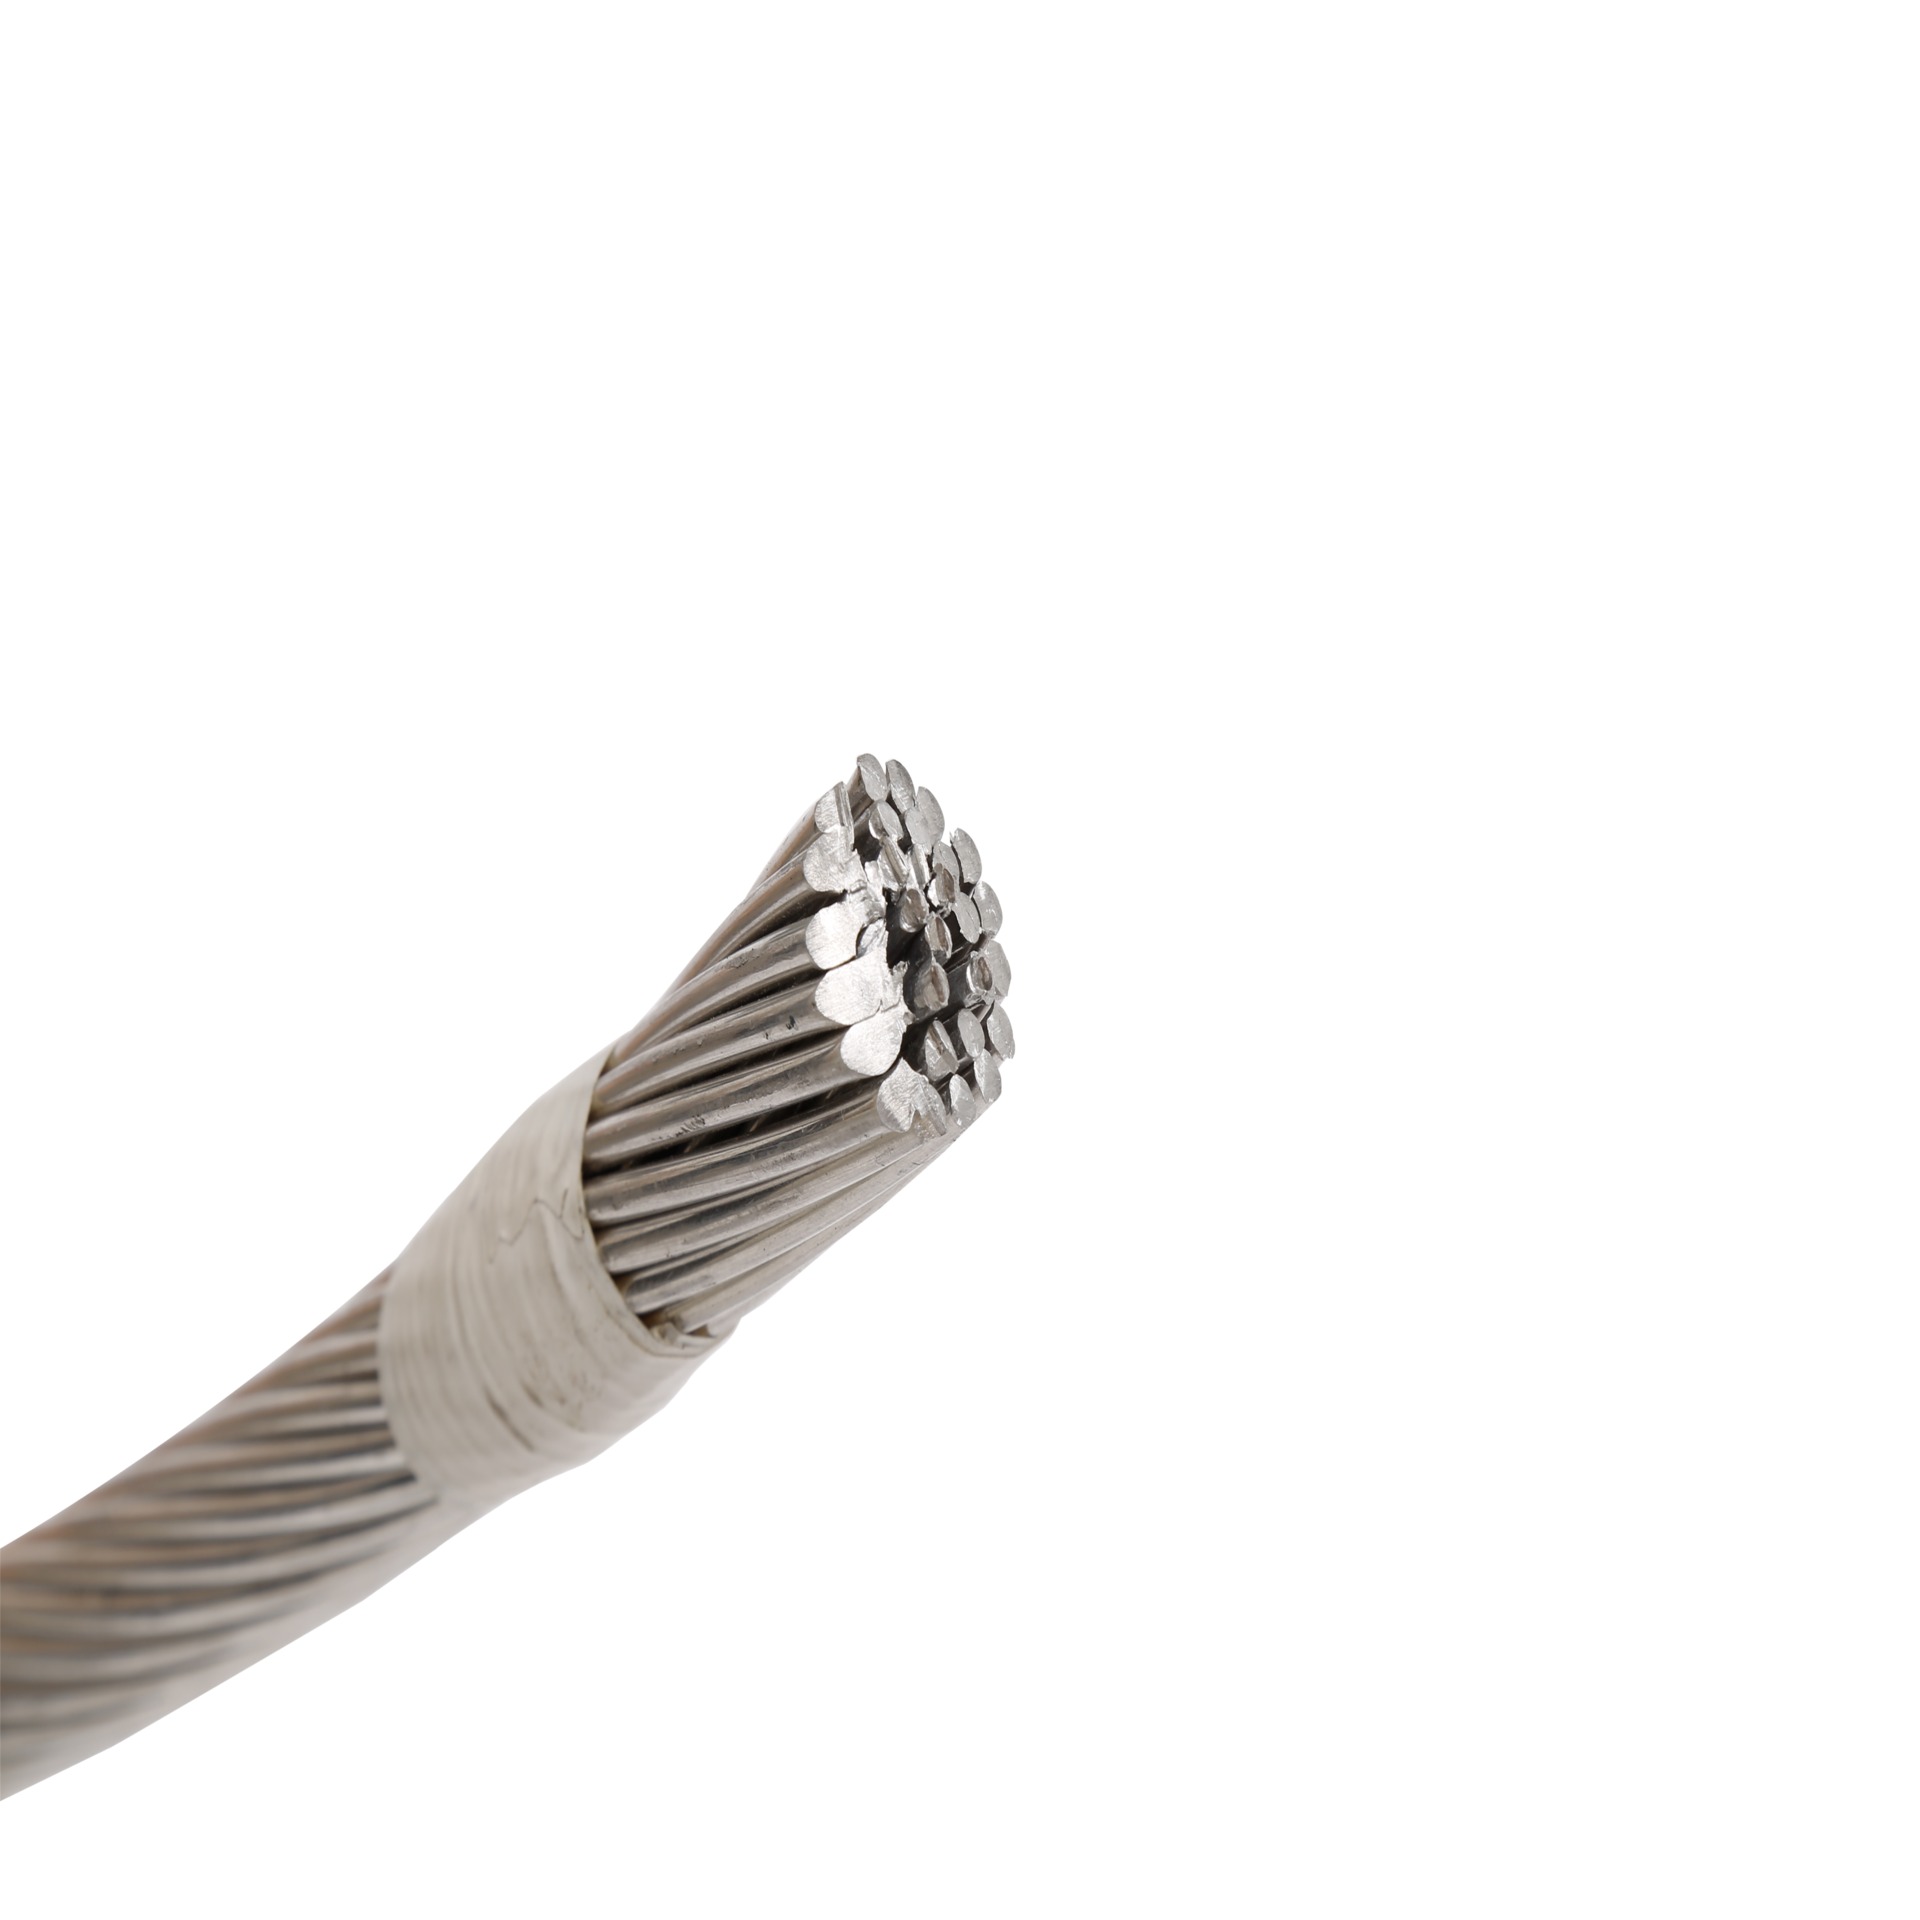 特价LGJ 300/25 钢芯铝绞线 架空钢芯绝缘铝绞线  高压电缆  裸铝